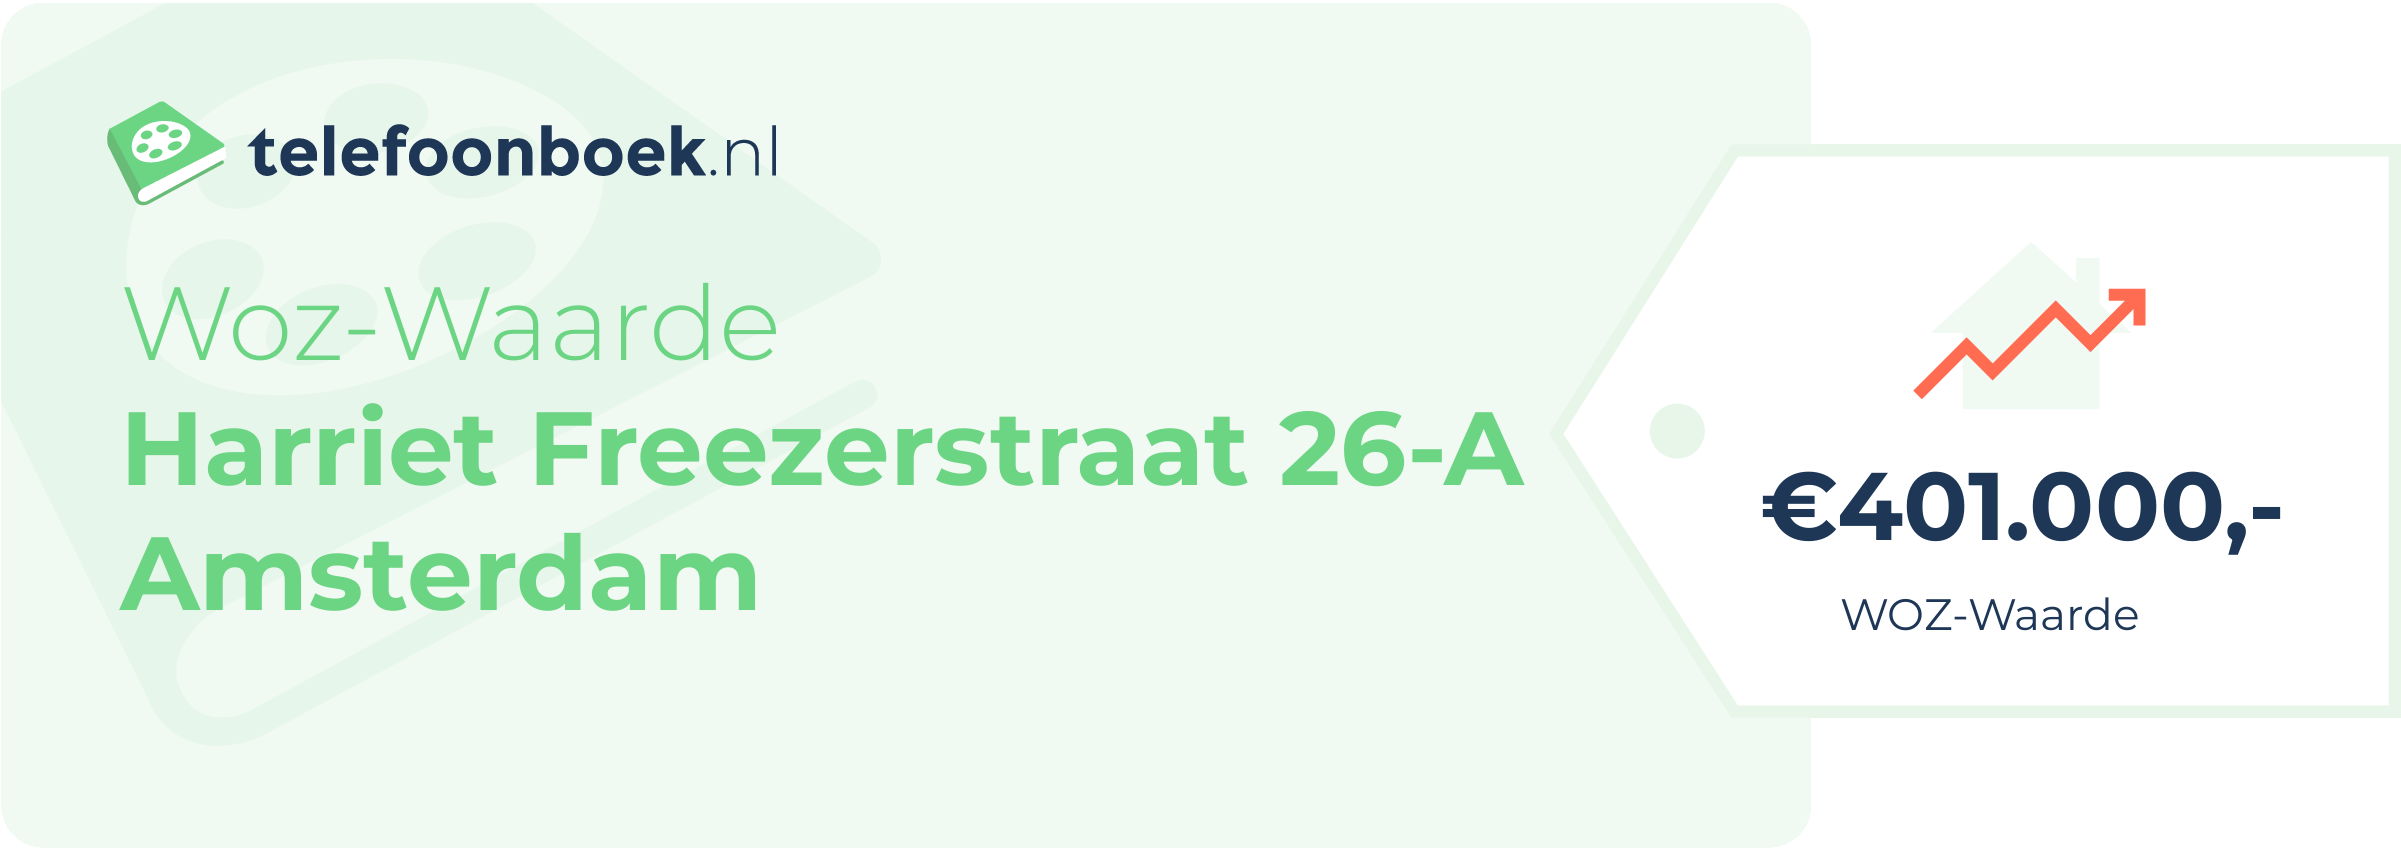 WOZ-waarde Harriet Freezerstraat 26-A Amsterdam